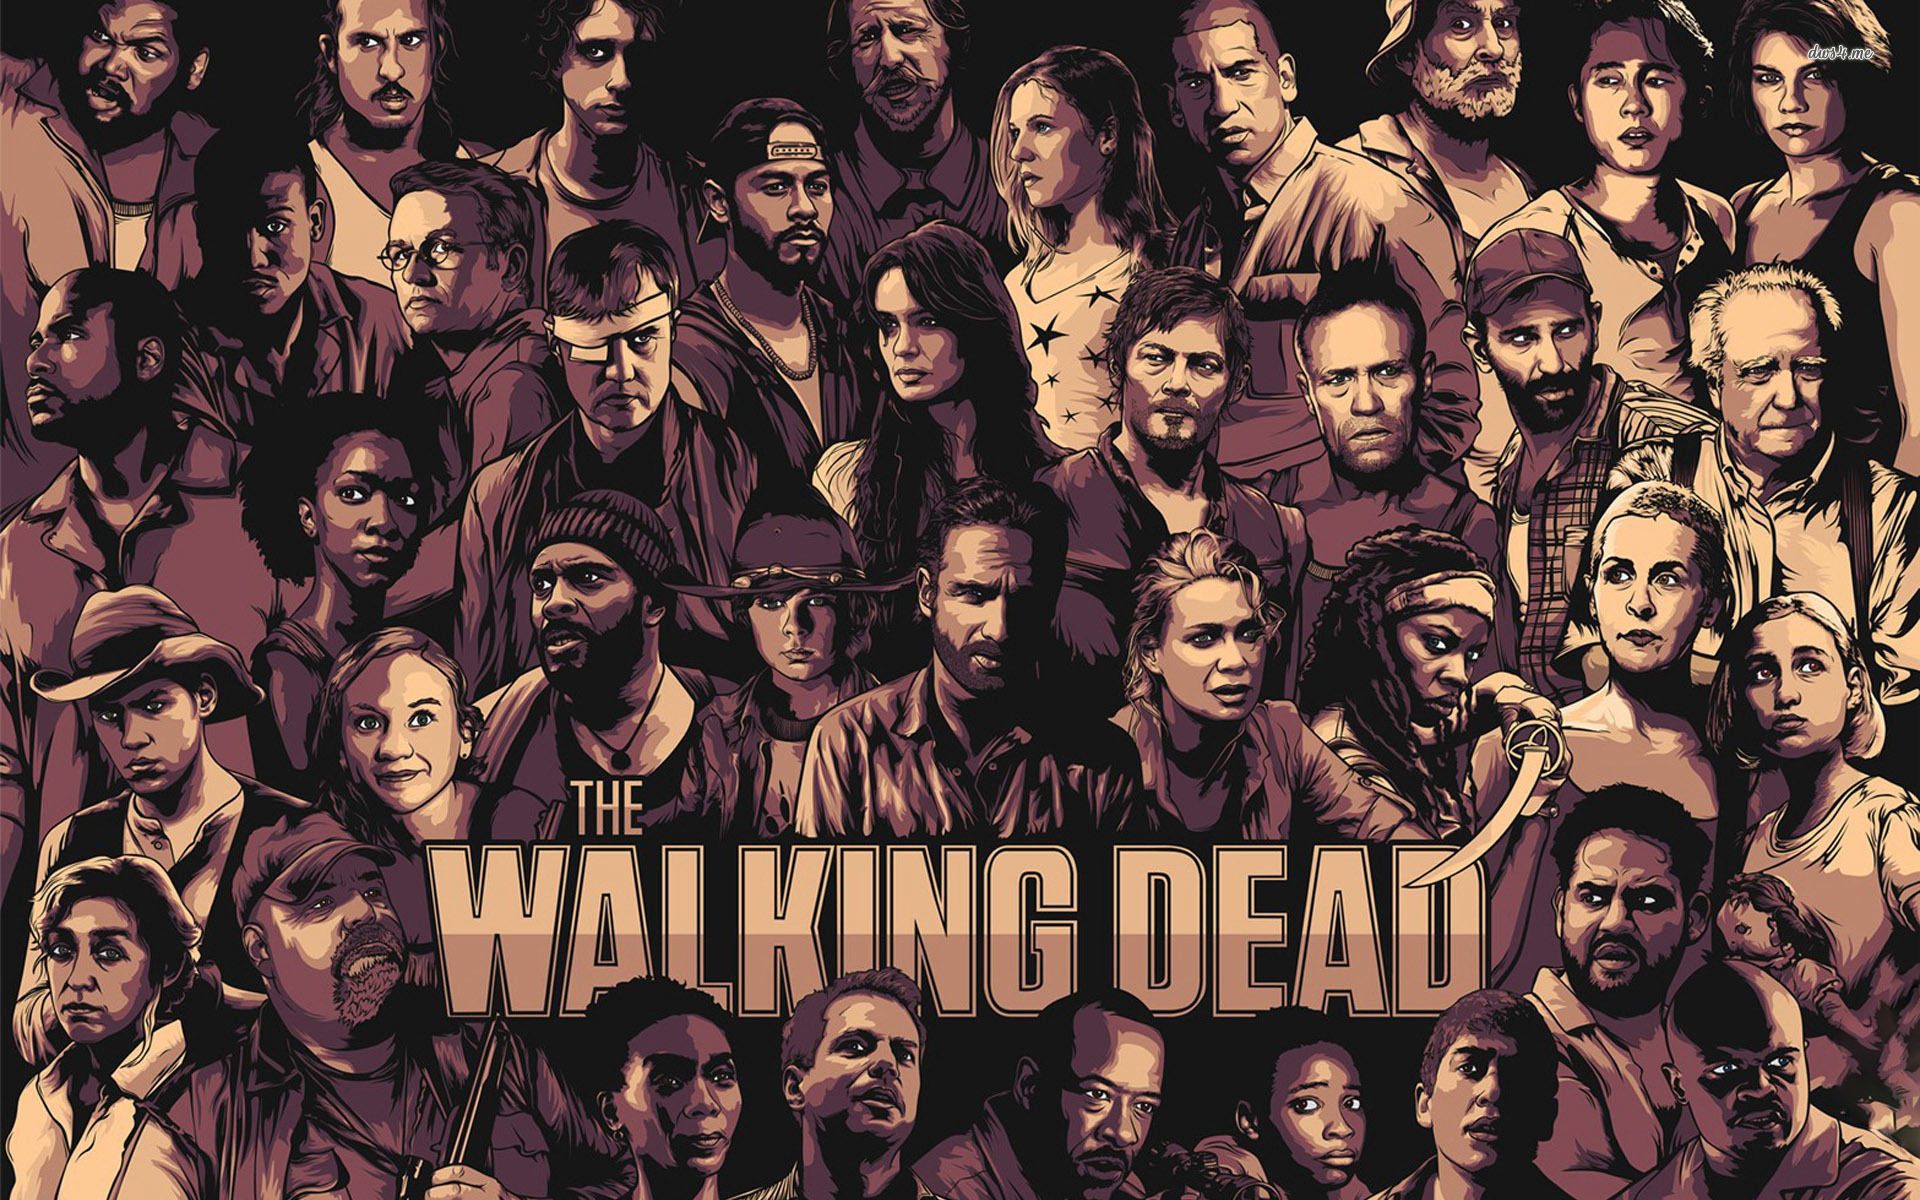 The Walking Dead Art Wallpaper Free The Walking Dead Art Background